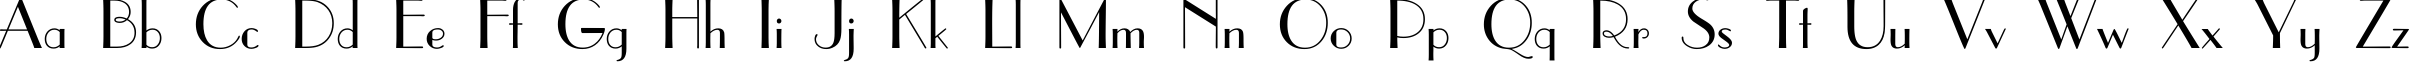 Пример написания английского алфавита шрифтом ParisianC